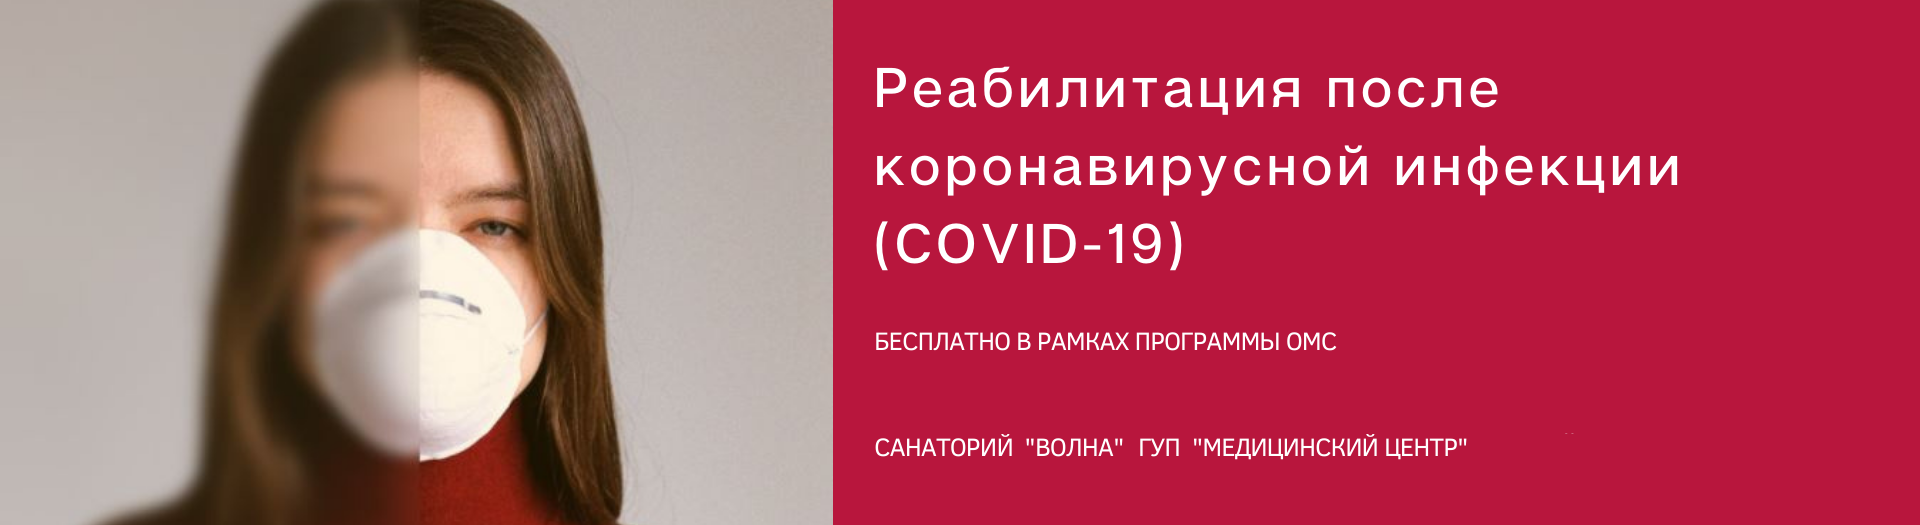 Реабилитация после коронавирусной инфекции (COVID-19)